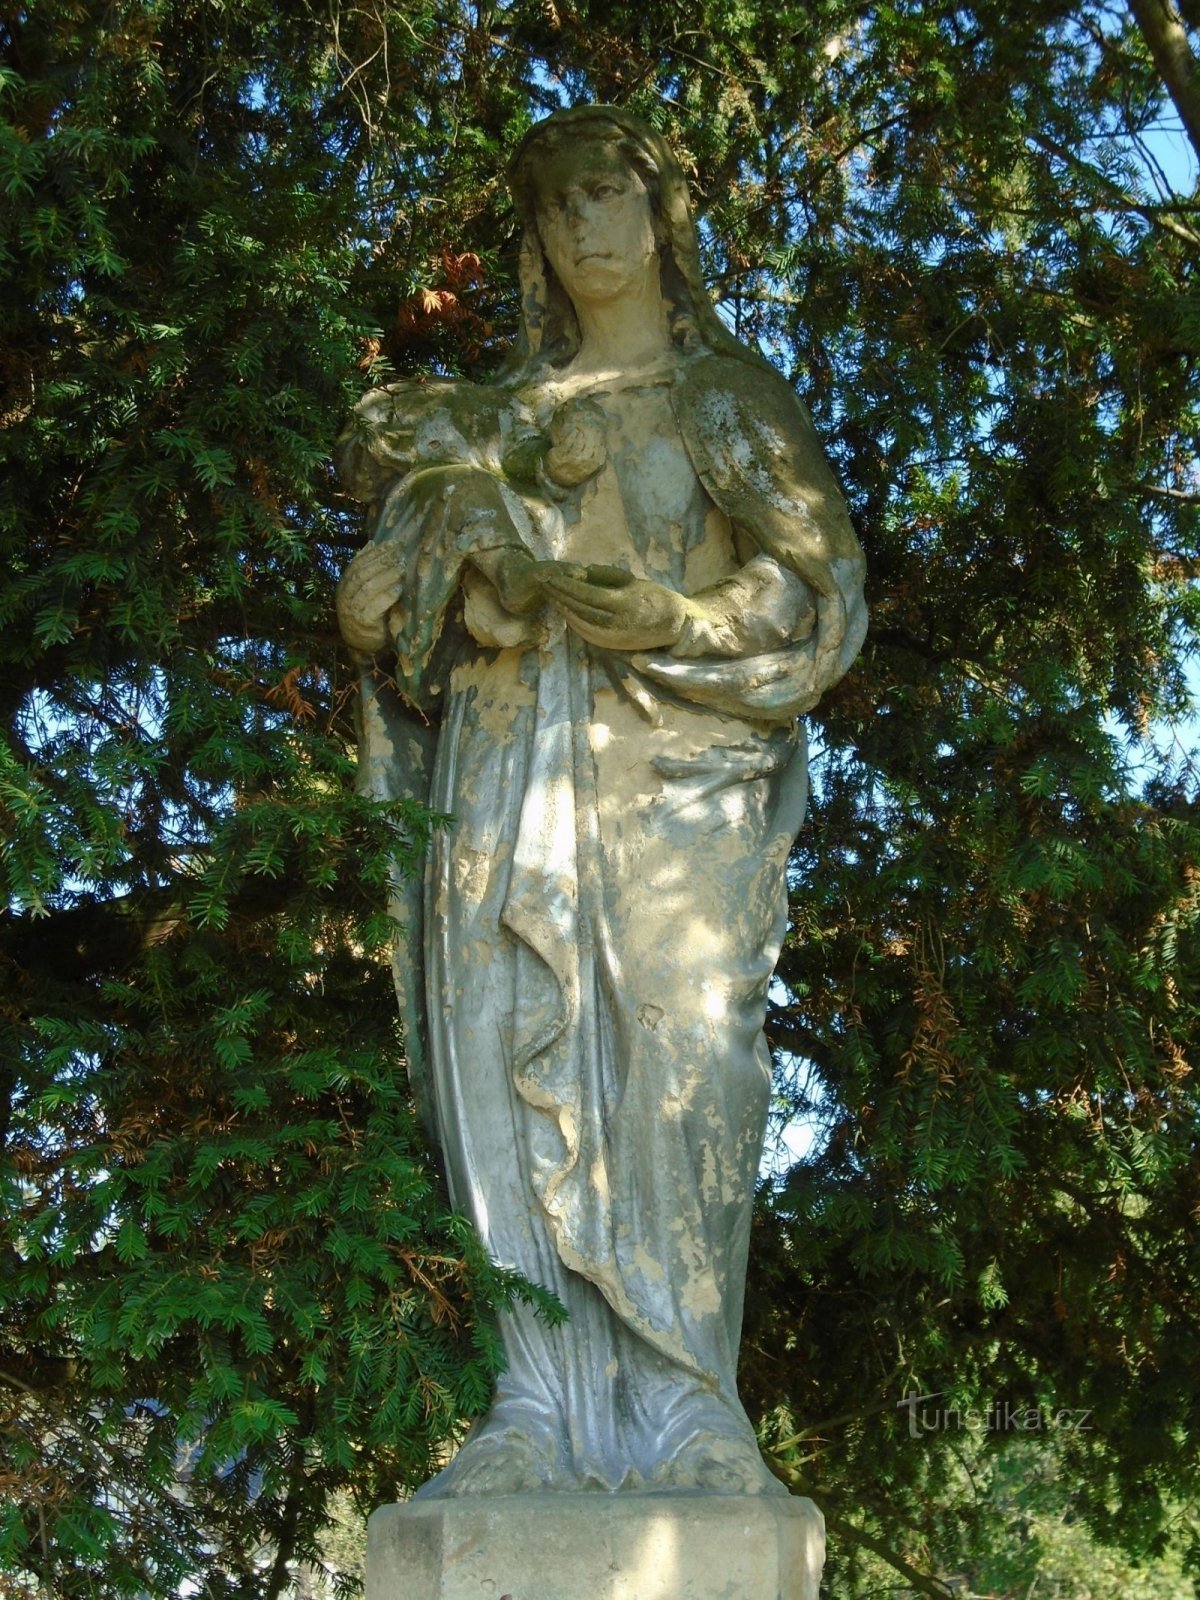 Statue of the Virgin Mary (Barchůvek, 17.9.2018/XNUMX/XNUMX)